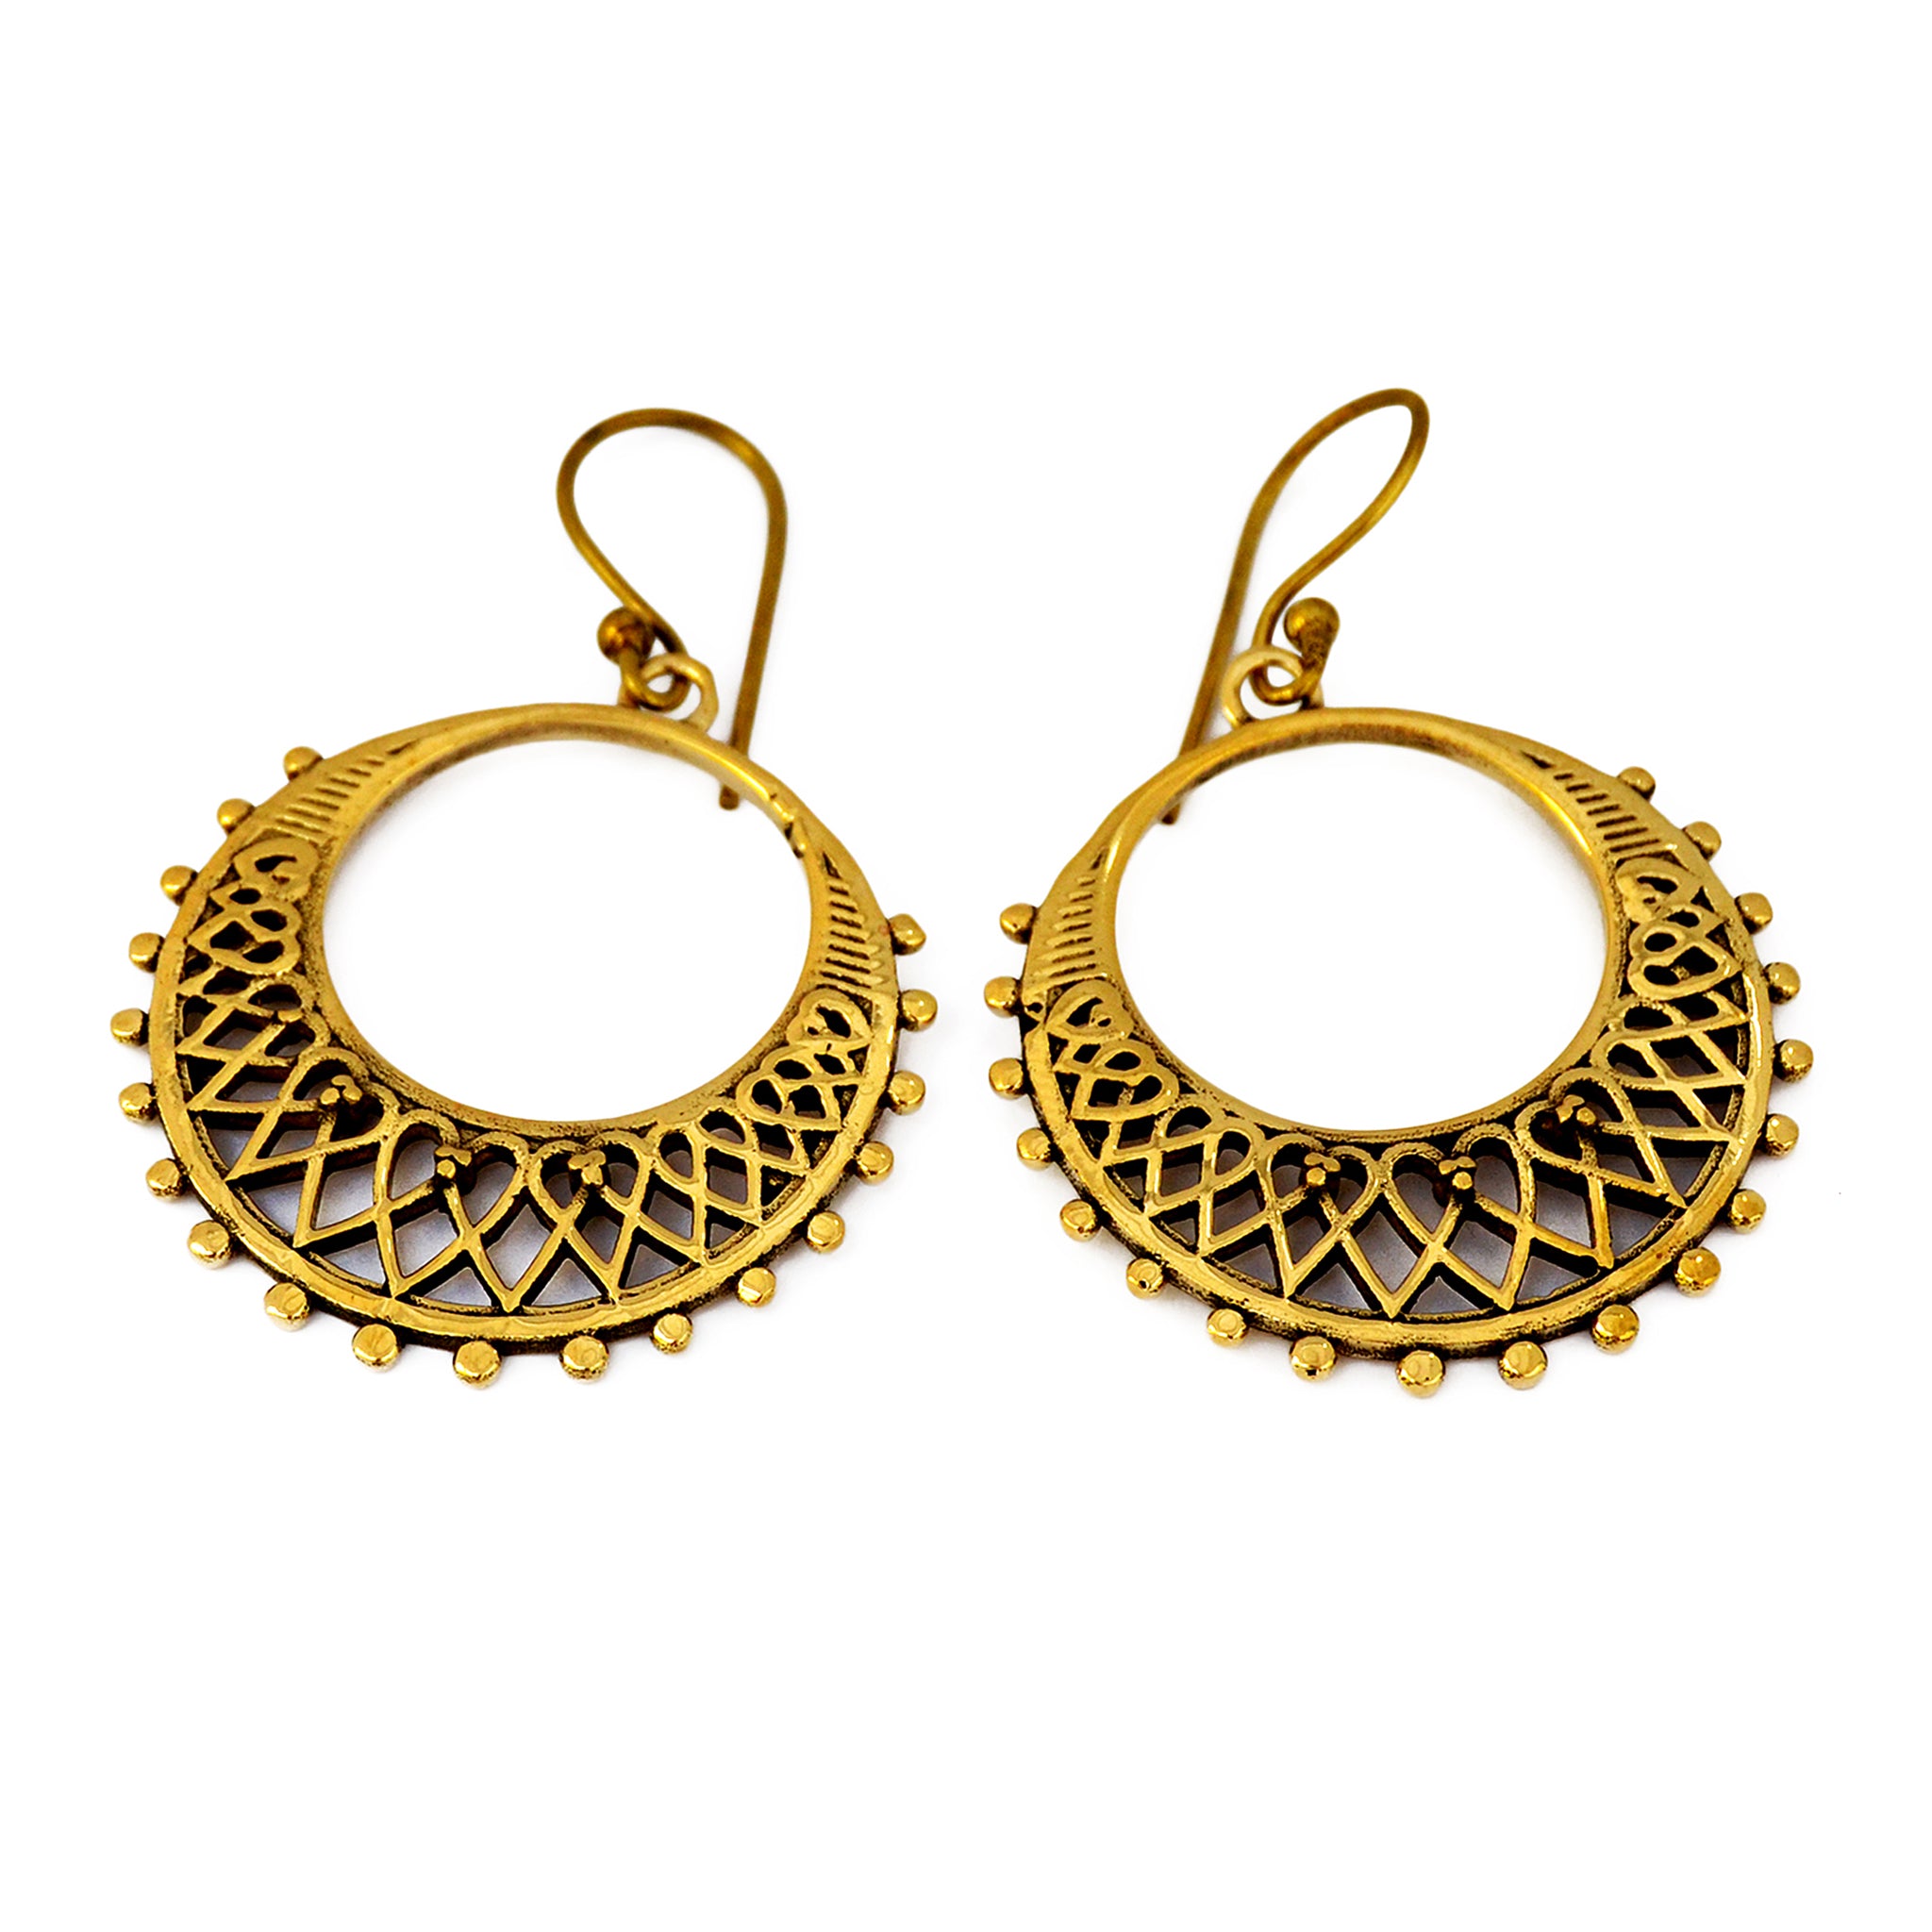 Golden hoop filigree earrings on white background